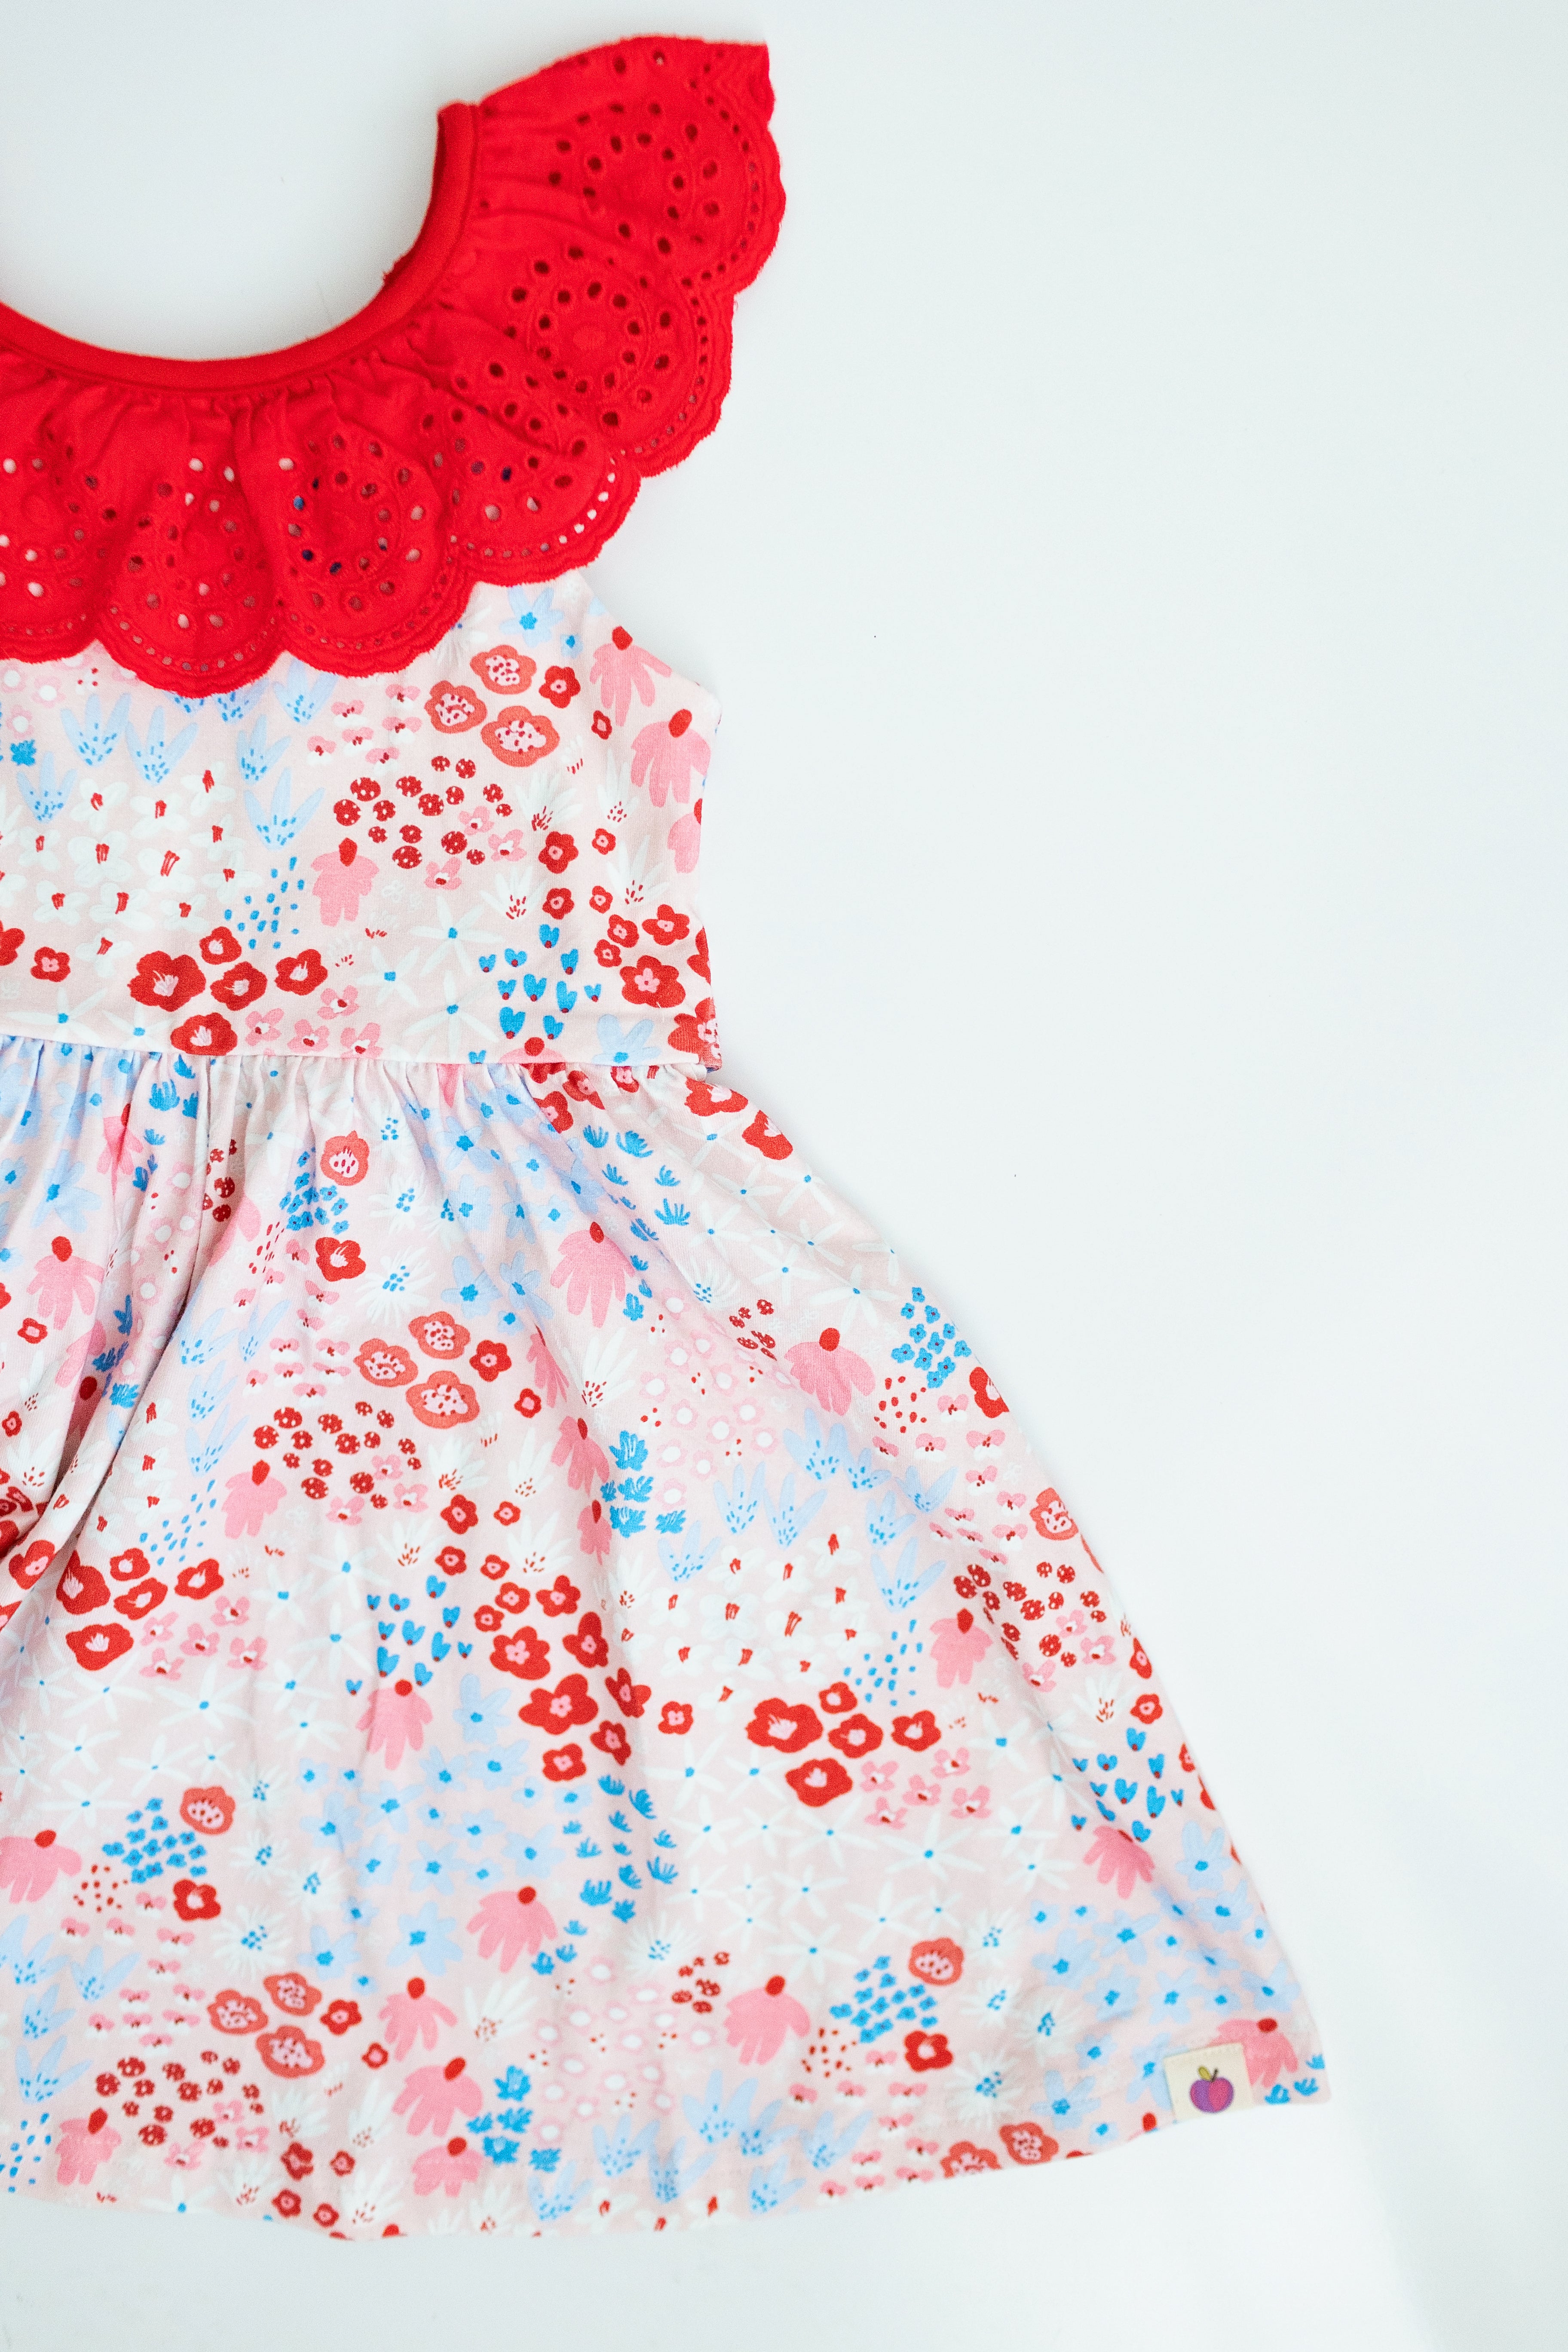 Penelope Knit Dress - Liberty Luxe